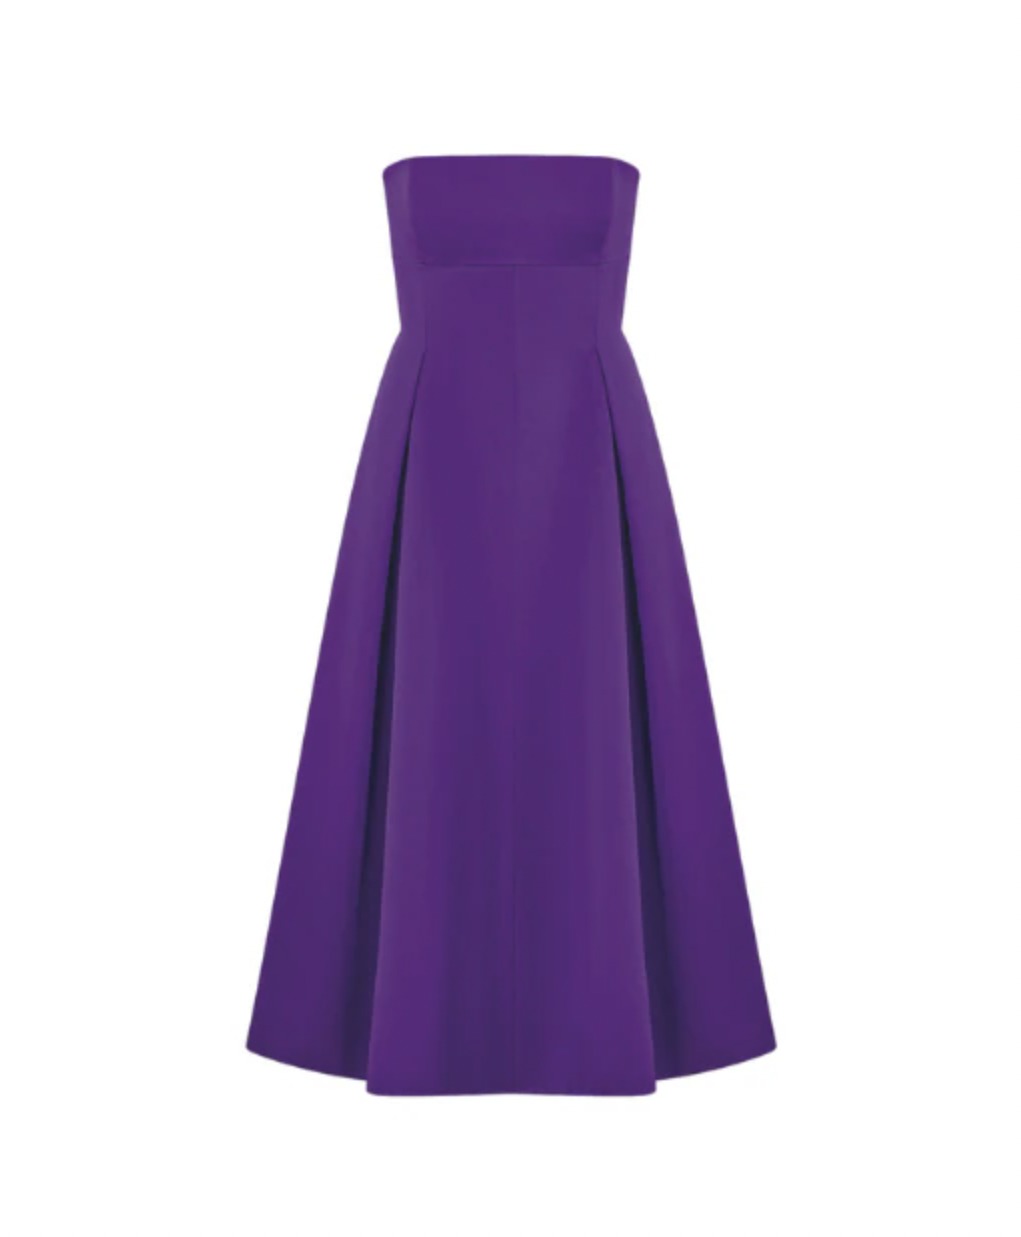 Deep purple: трендовая одежда и аксессуары фиолетового цвета